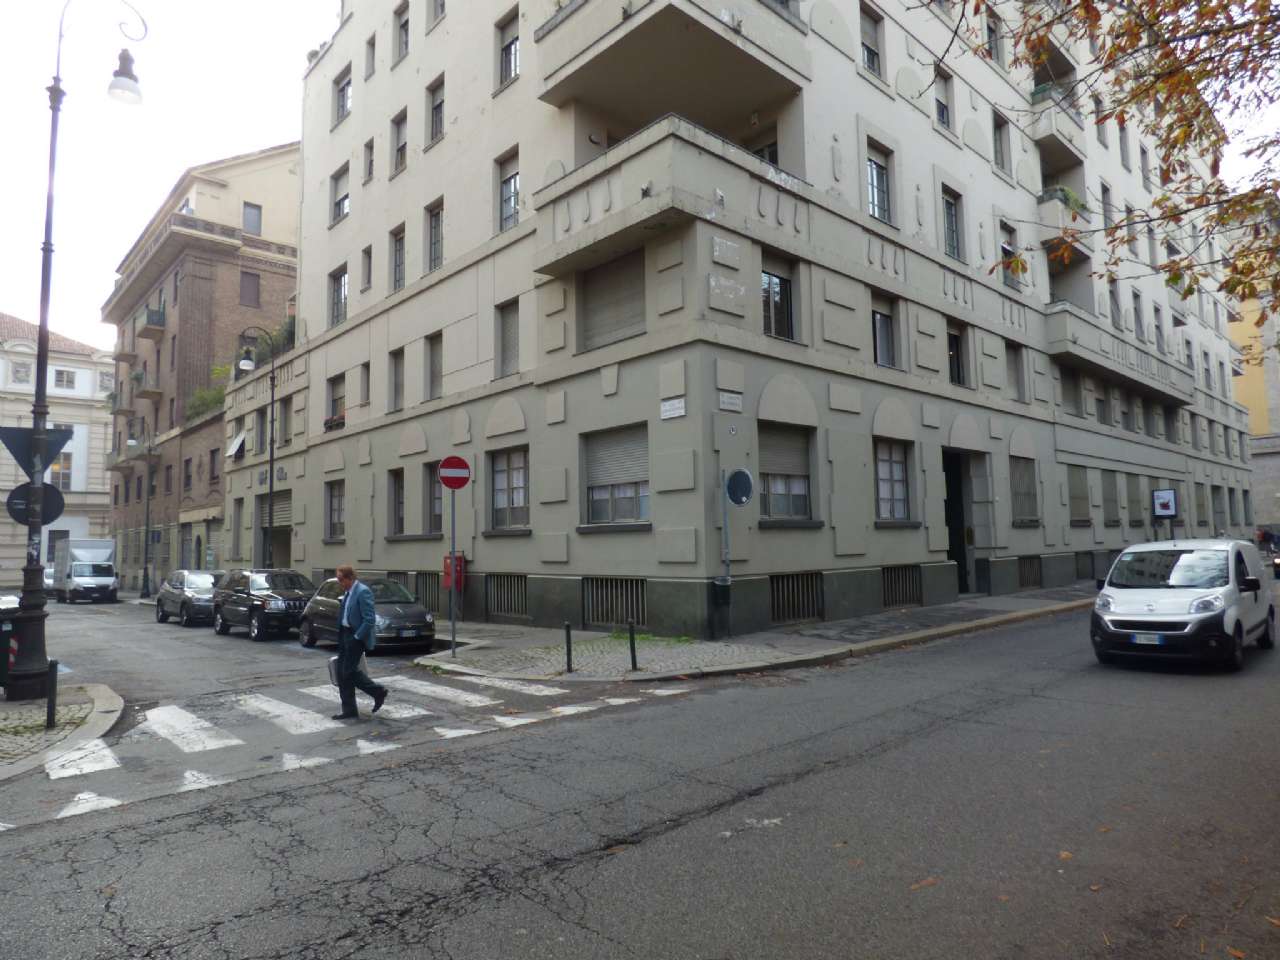 Ufficio in Vendita a Torino